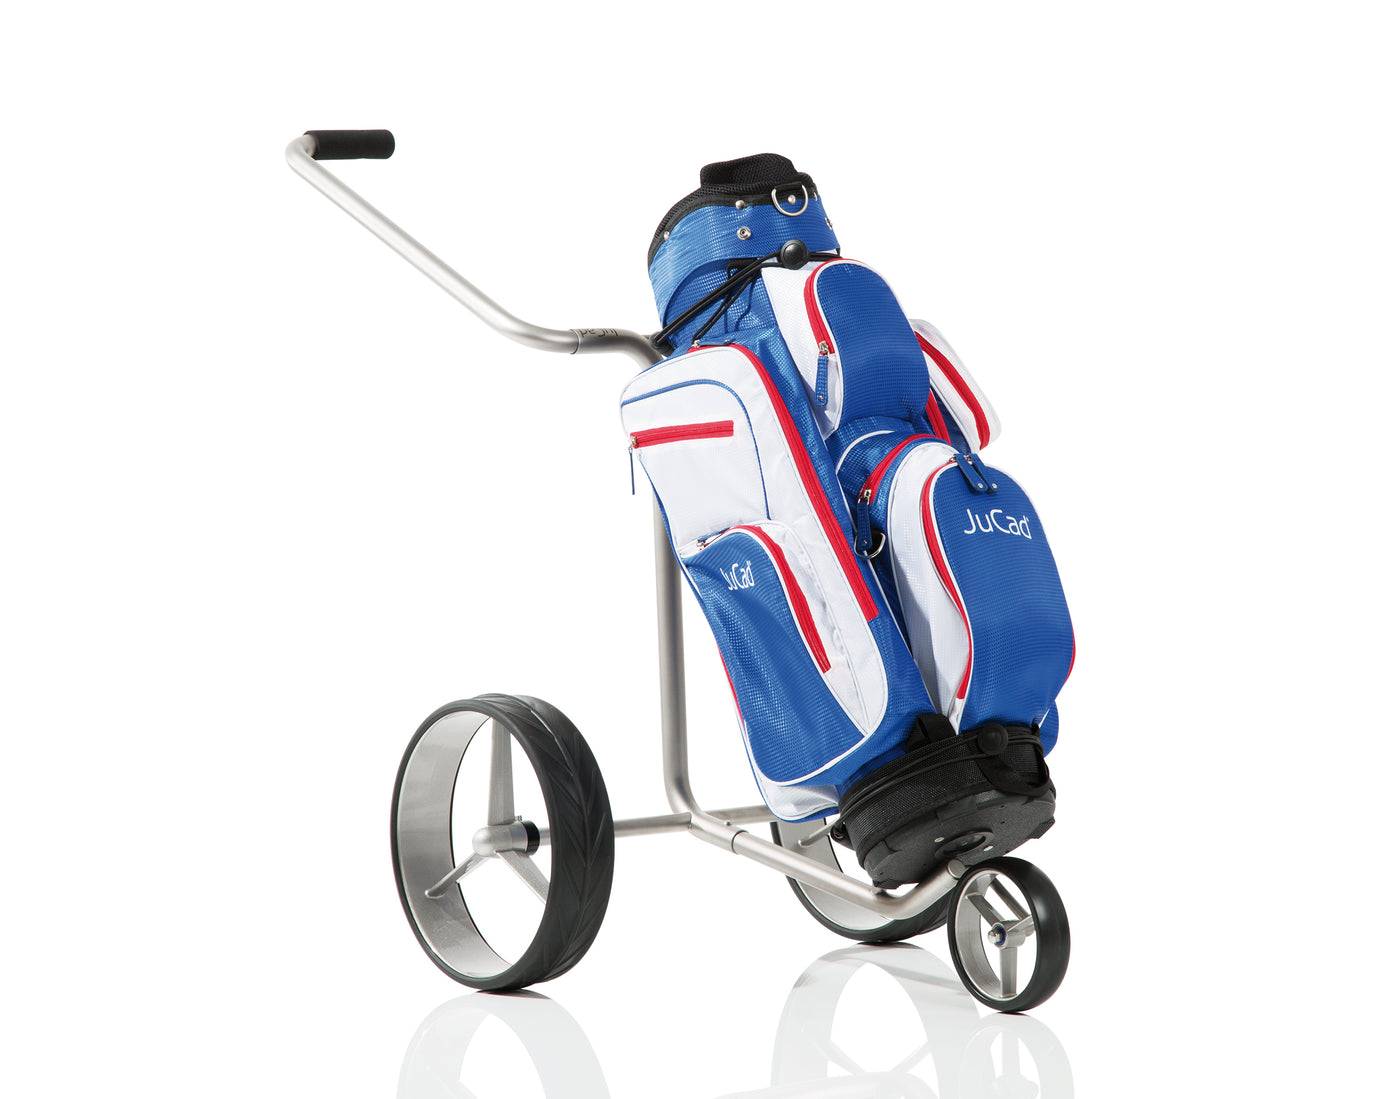 JuCad chariot de golf junior en acier inoxydable 2 roues - pour nos plus jeunes golfeurs